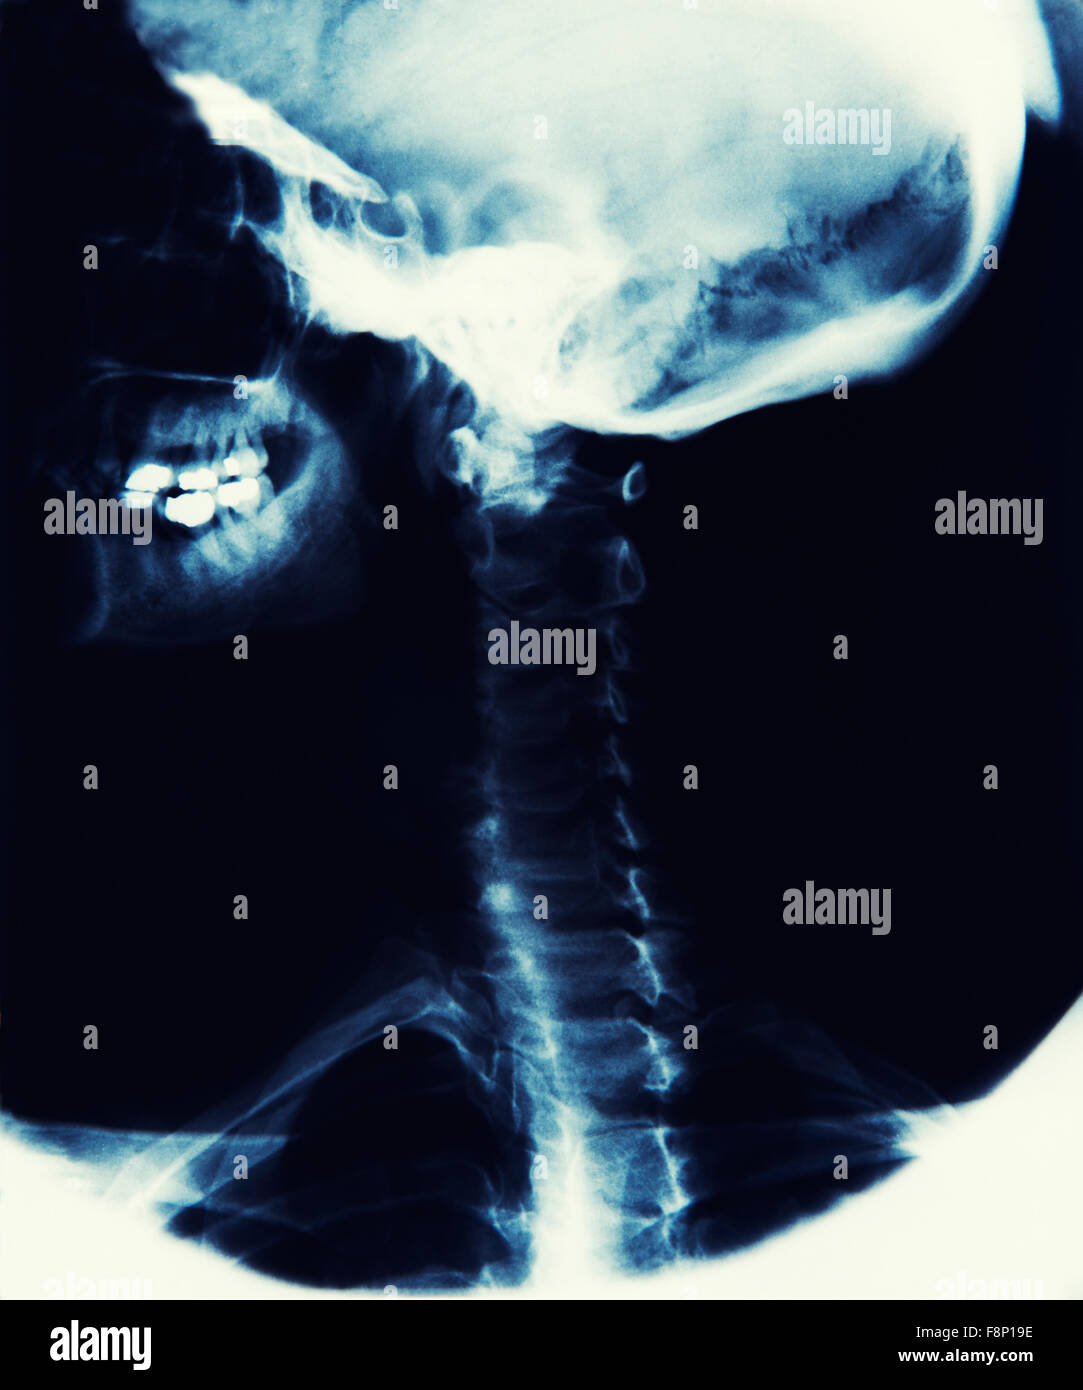 A RAGGI X che mostra immagini cranio, la ganascia e la spina dorsale Foto Stock